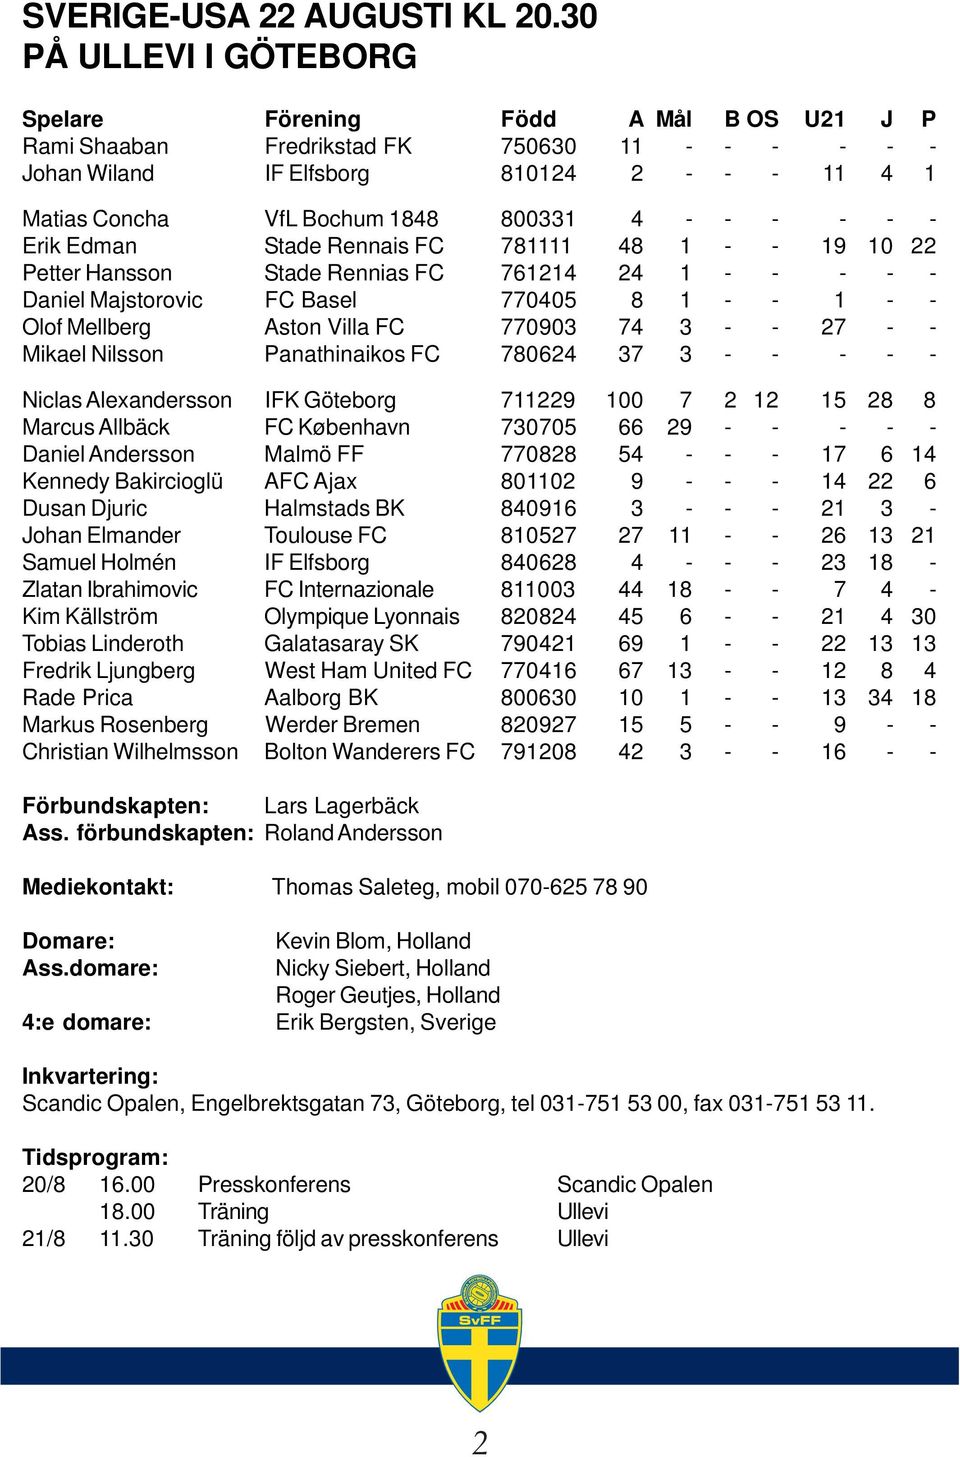 4 - - - - - - Erik Edman Stade Rennais FC 781111 48 1 - - 19 10 22 Petter Hansson Stade Rennias FC 761214 24 1 - - - - - Daniel Majstorovic FC Basel 770405 8 1 - - 1 - - Olof Mellberg Aston Villa FC